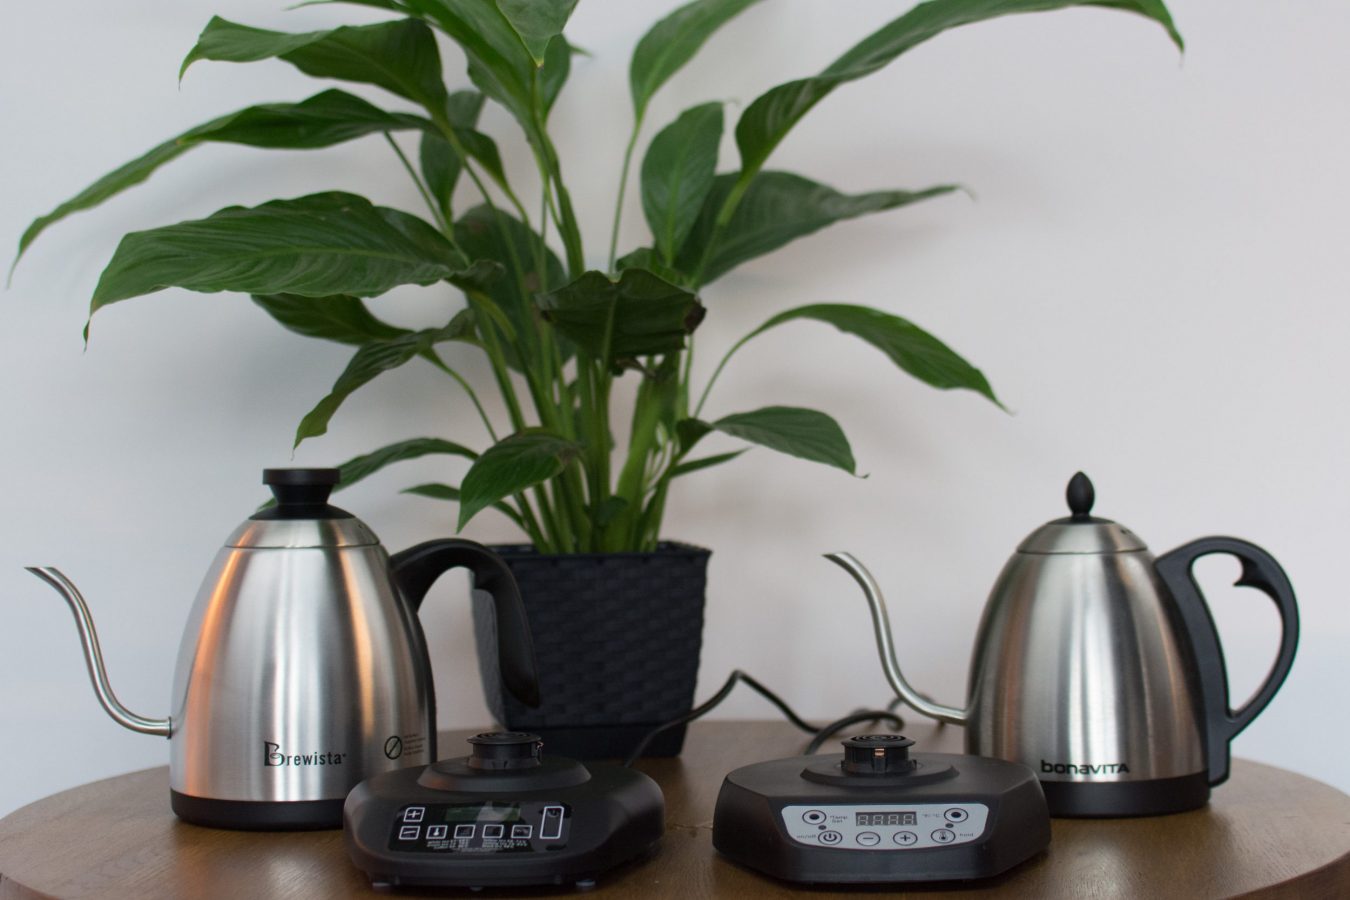 kawa - coffee plant - bonavita - brewista